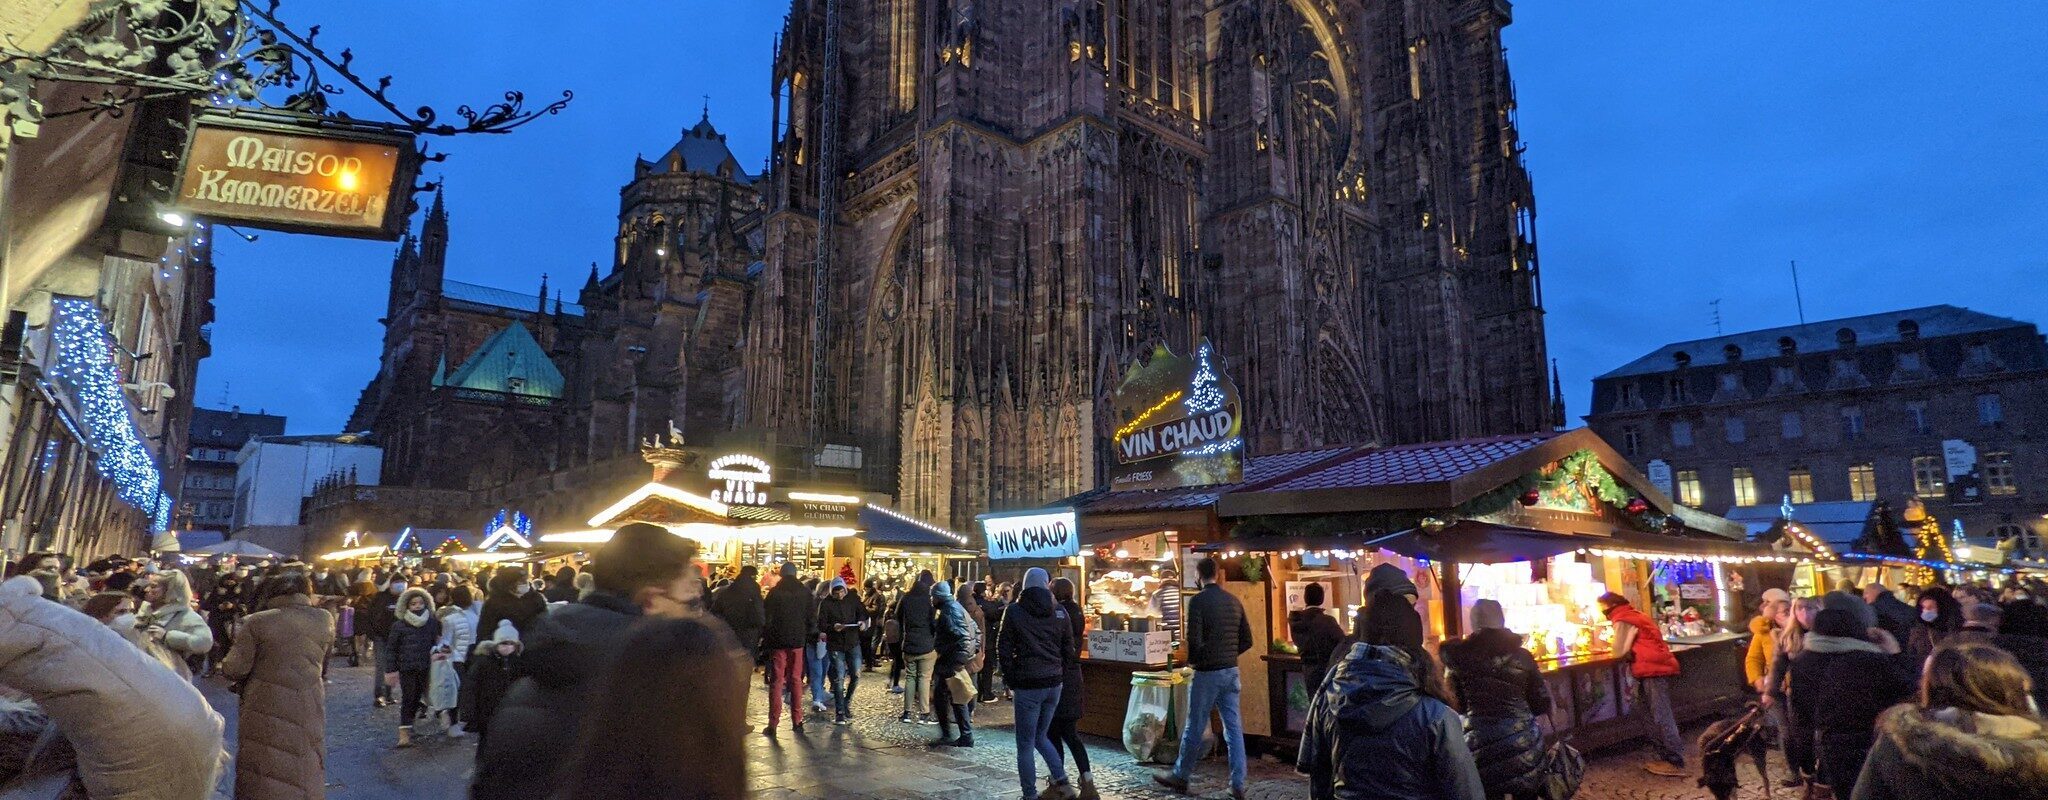 Concilier écologie et tourisme de masse, l’impossible défi du Marché de Noël de Strasbourg